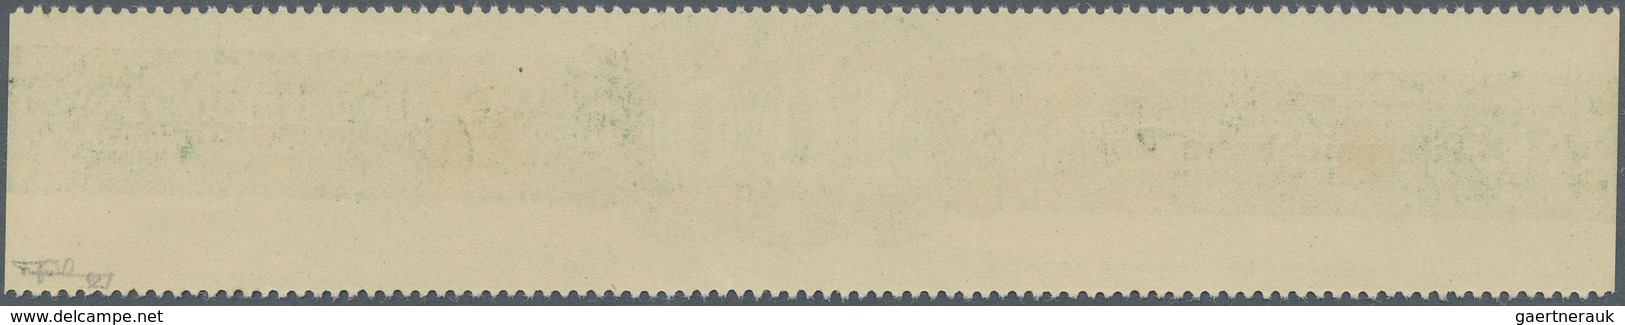 Österreich - Verrechnungsmarken: 1948, 100 Sch., 200 Sch. Gez. 11 Und 300 Sch., Alle Drei Werte In G - Revenue Stamps